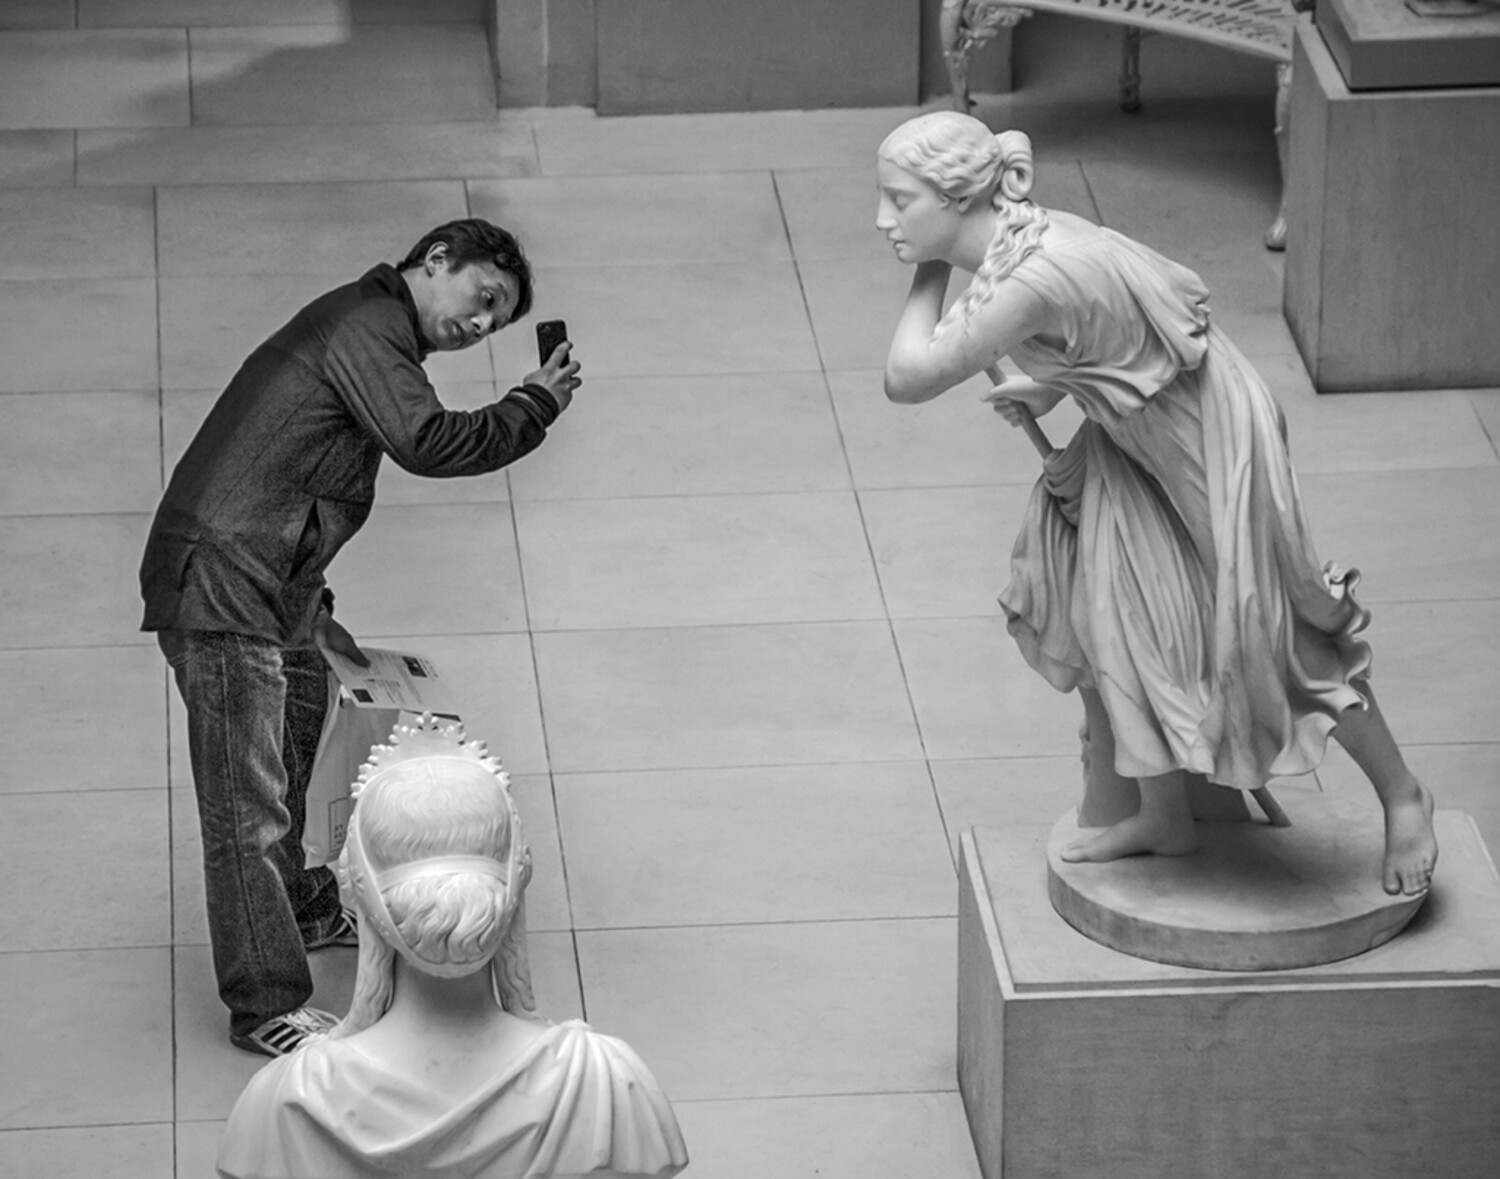 Финалист в категории «Люди» среди любителей, 2021. Статуя в Чикагском институте искусств, кажется, позирует туристу. Автор Энтони Якуцци